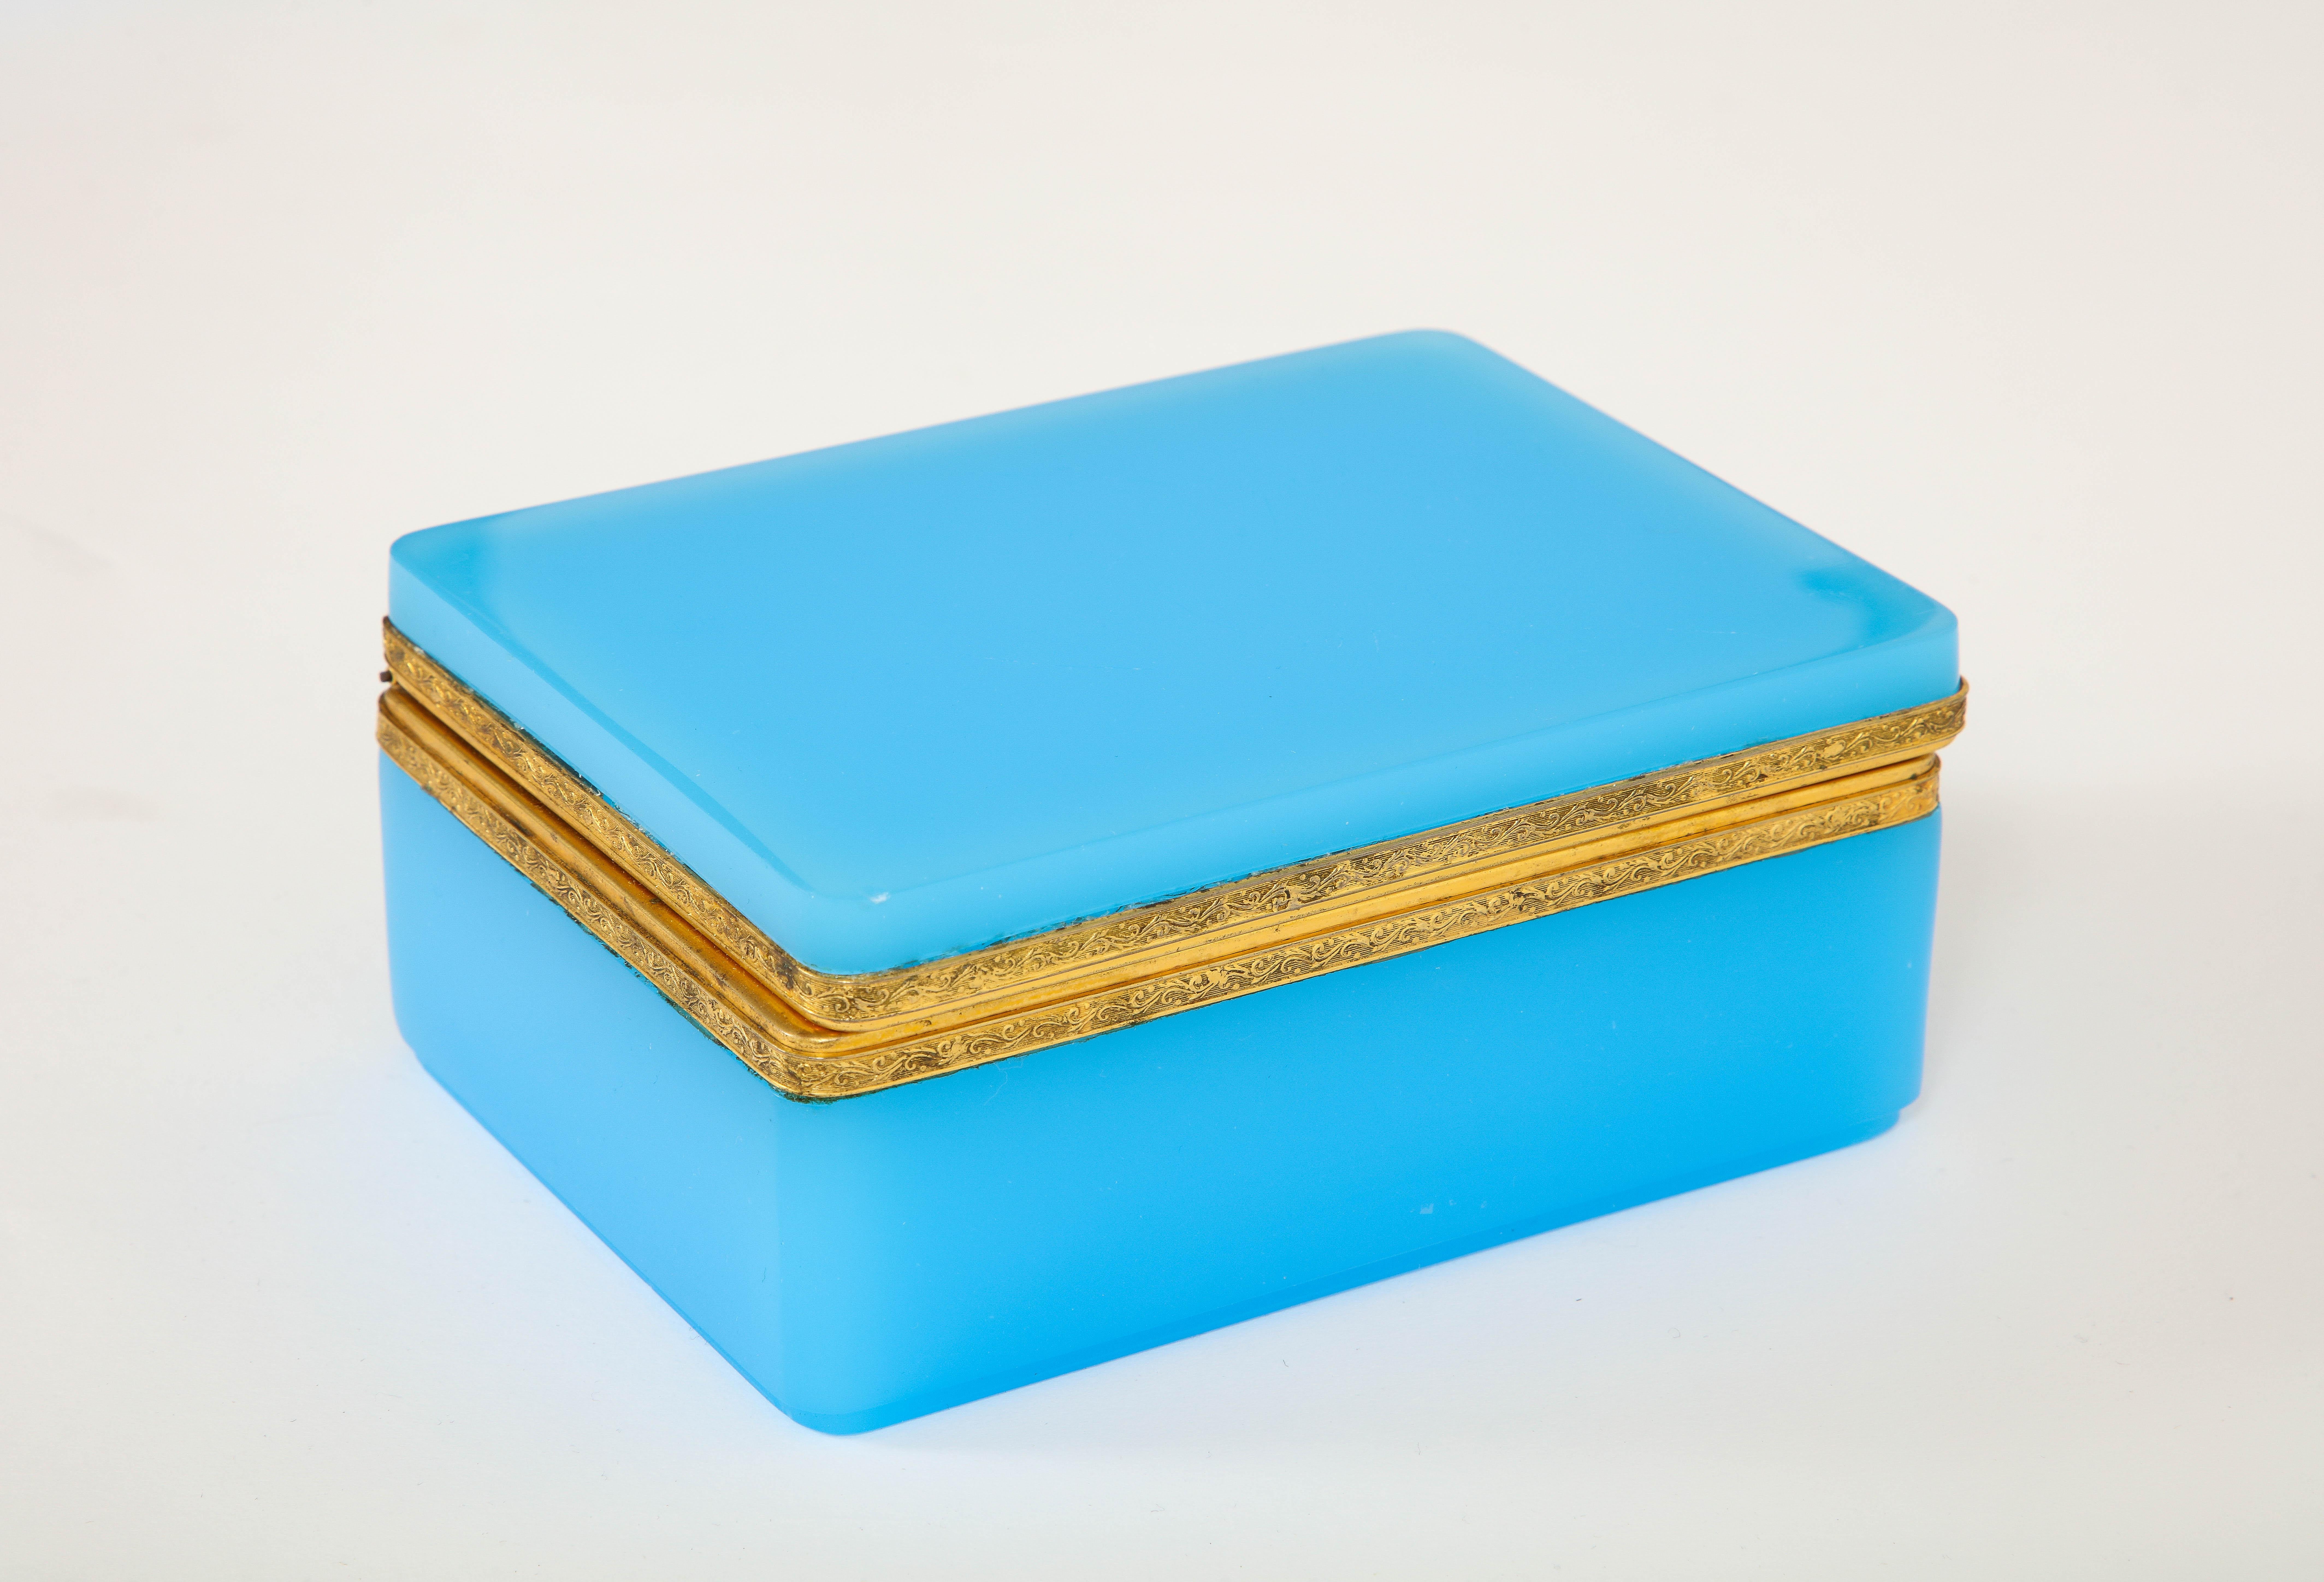 Fantastique boîte en cristal opalin bleu montée en bronze doré, de style Louis XVI, datant du 19e siècle.  La boîte est composée de deux sections de cristal opalin français qui sont montées sur un fabuleux loquet en bronze doré.  Le bronze de la